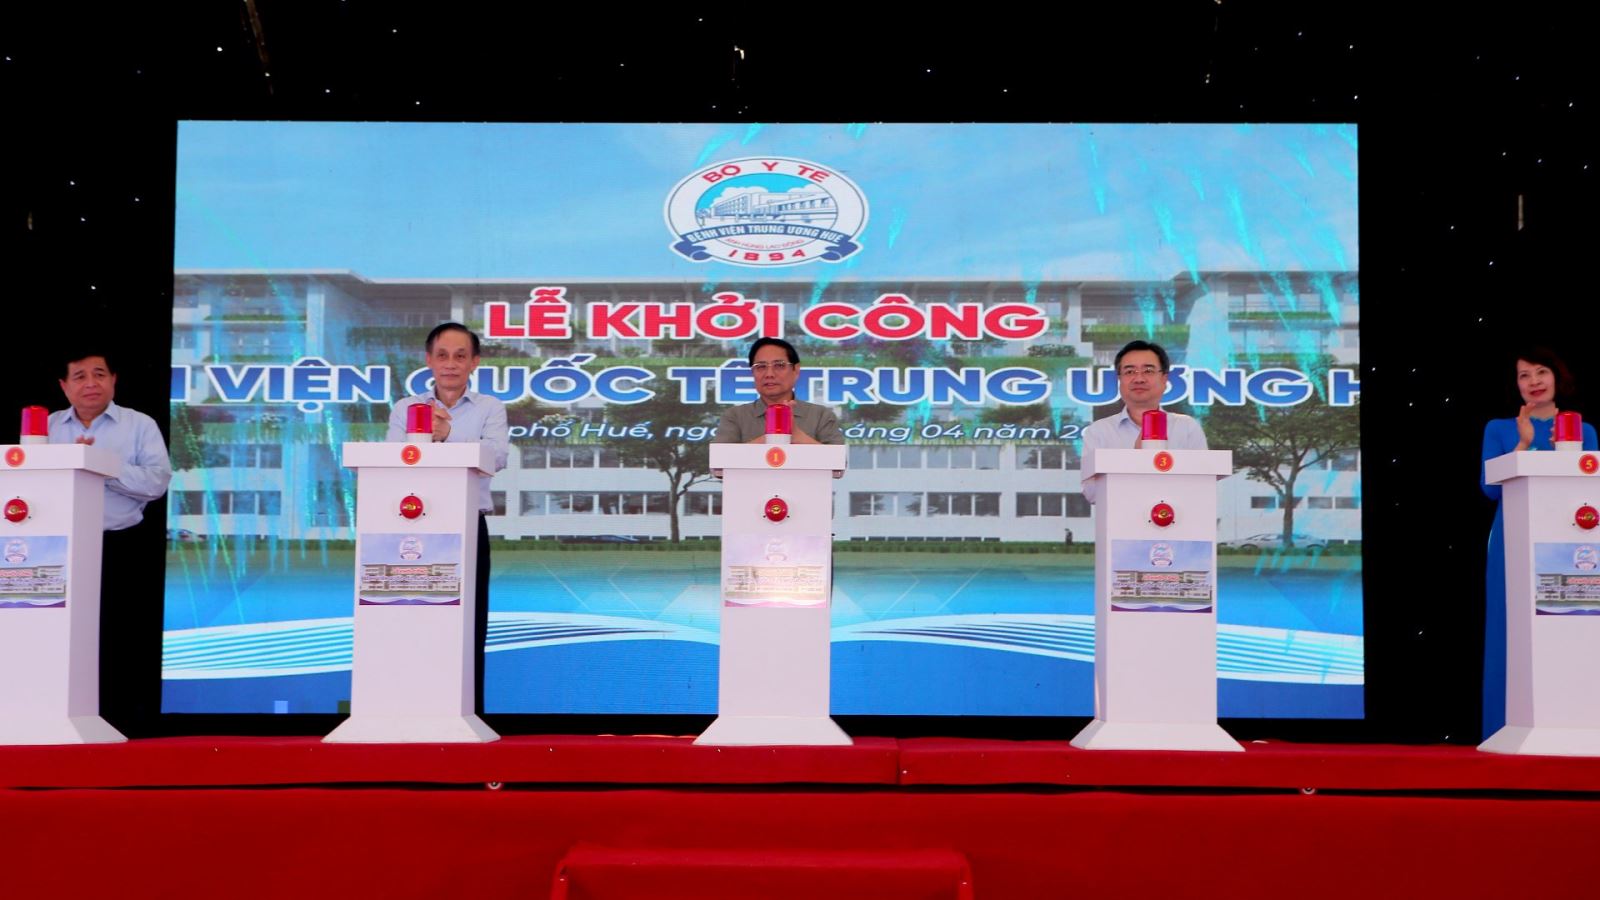 Thủ tướng Chính phủ Phạm Minh Chính bấm nút khởi công dự án Bệnh viện Quốc tế Trung ương Huế 2. 